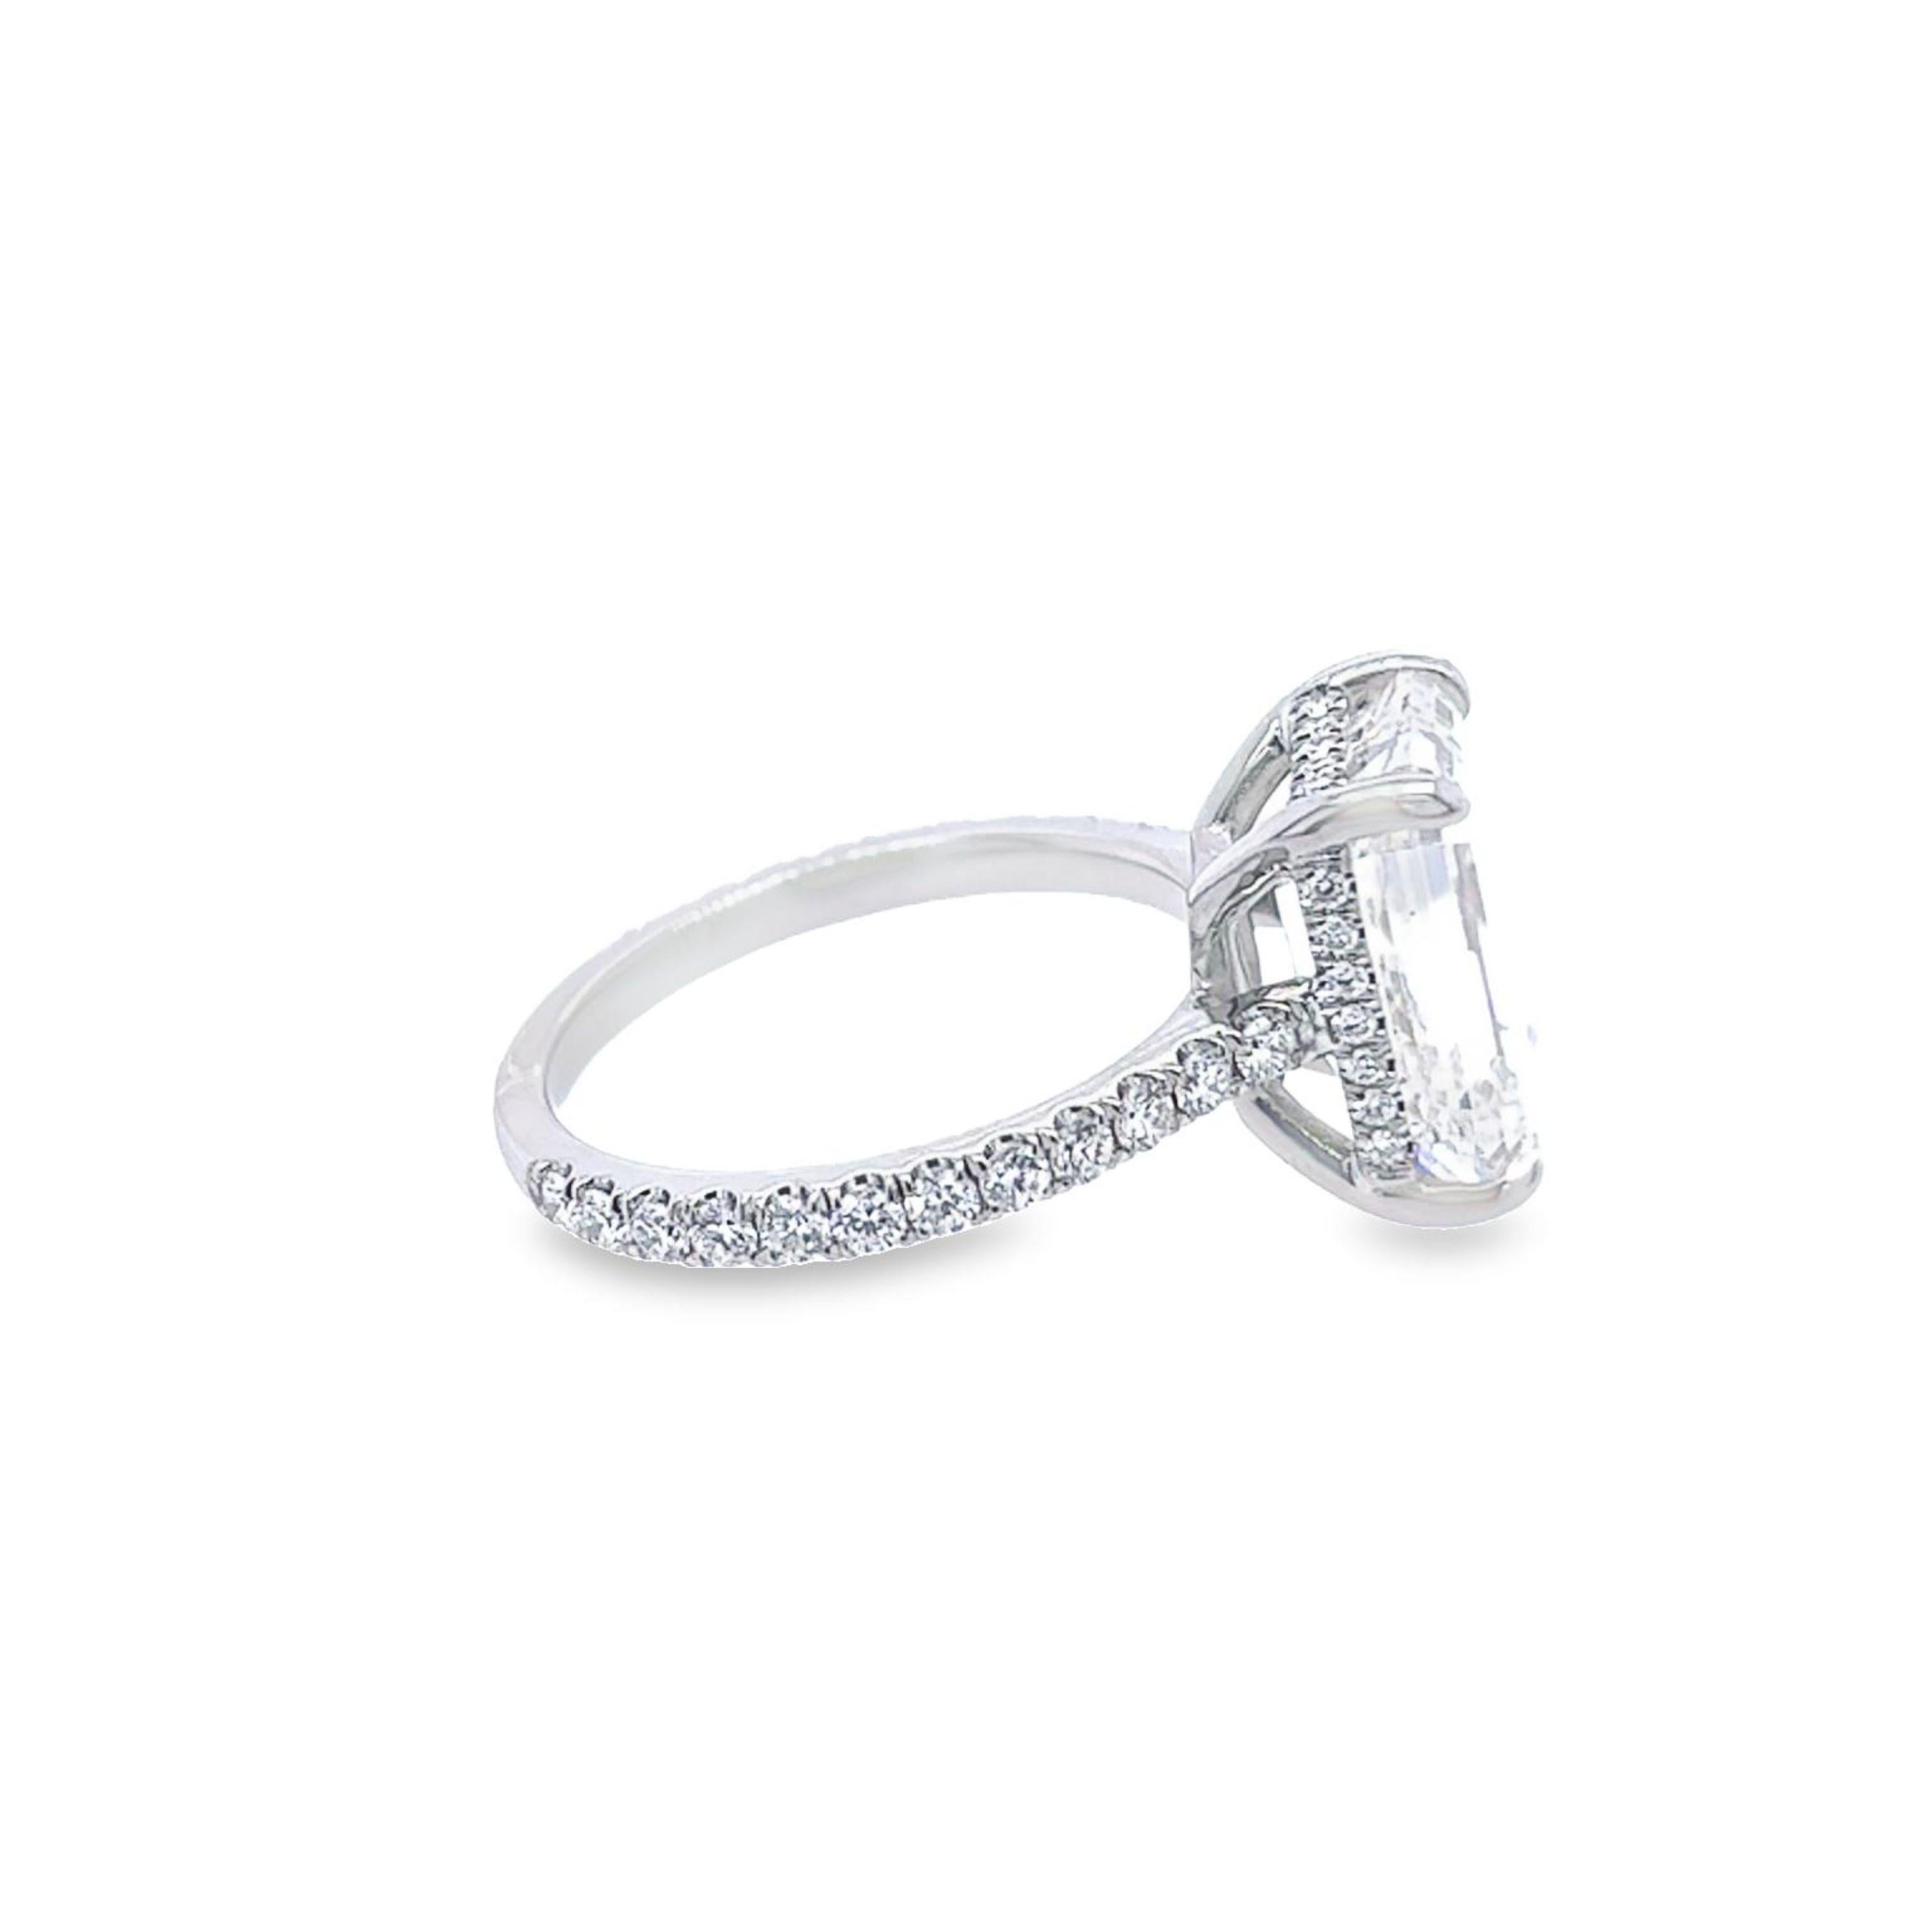 Women's David Rosenberg 5.41 Carat Emerald Cut GIA Diamond Engagement Ring